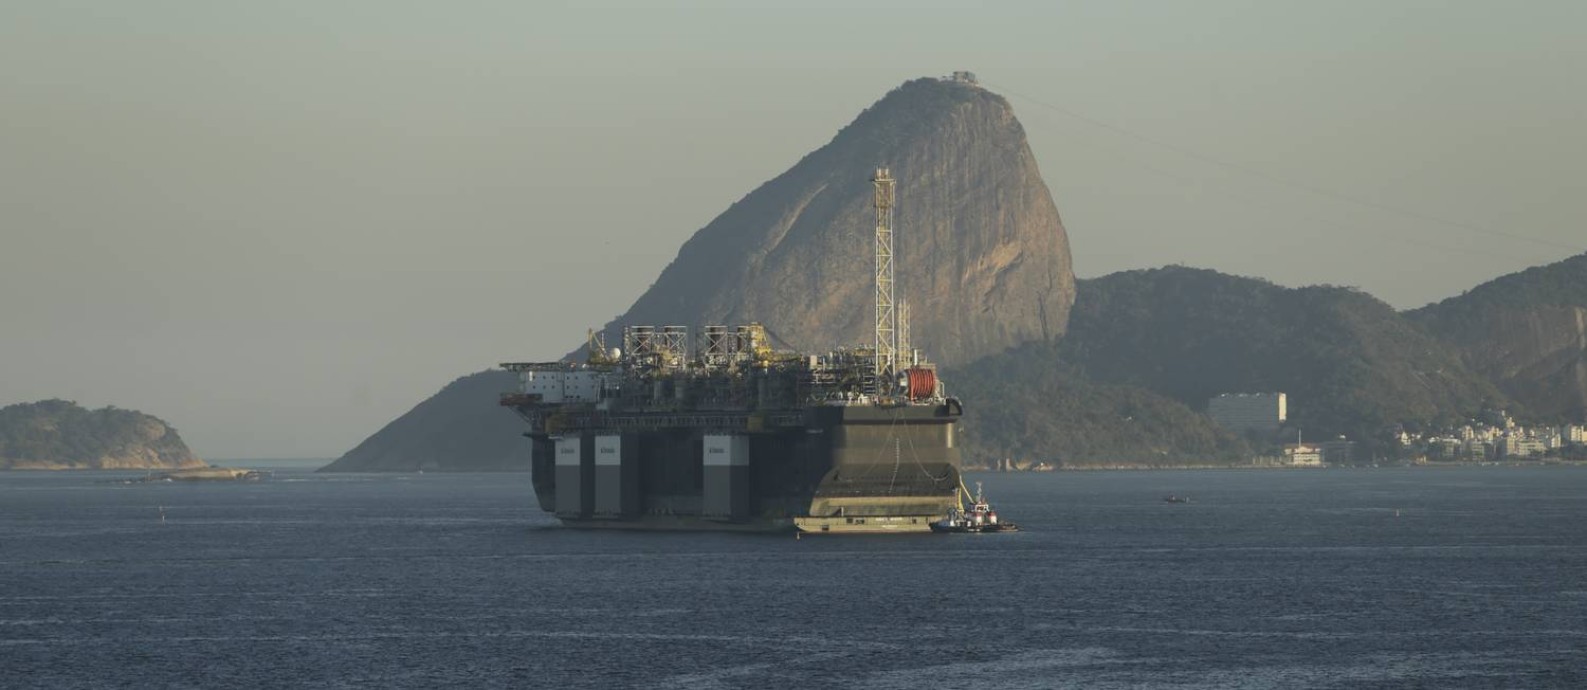 Nova escala. Plataforma P-67 na Baía de Guanabara: setor terá três leilões de petróleo este ano, incluindo áreas no pré-sal Foto: Antonio Scorza / Antonio Scorza